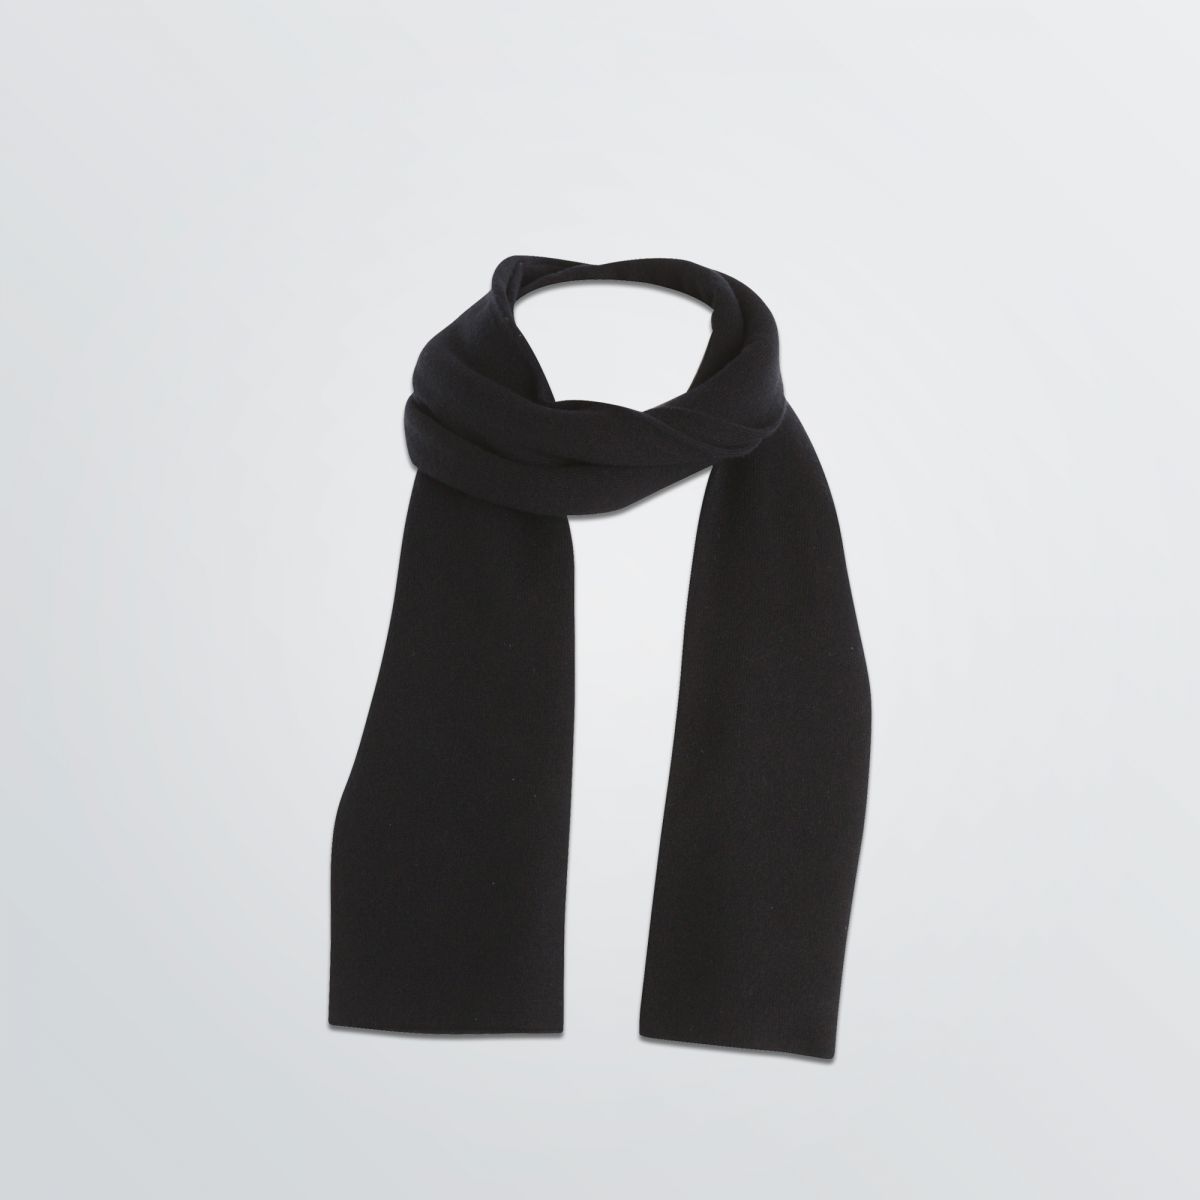 Individualisierbarer Basic Schal aus Wunschmaterial abgebildet in schwarzer Beispielfarbe einmal umwickelt